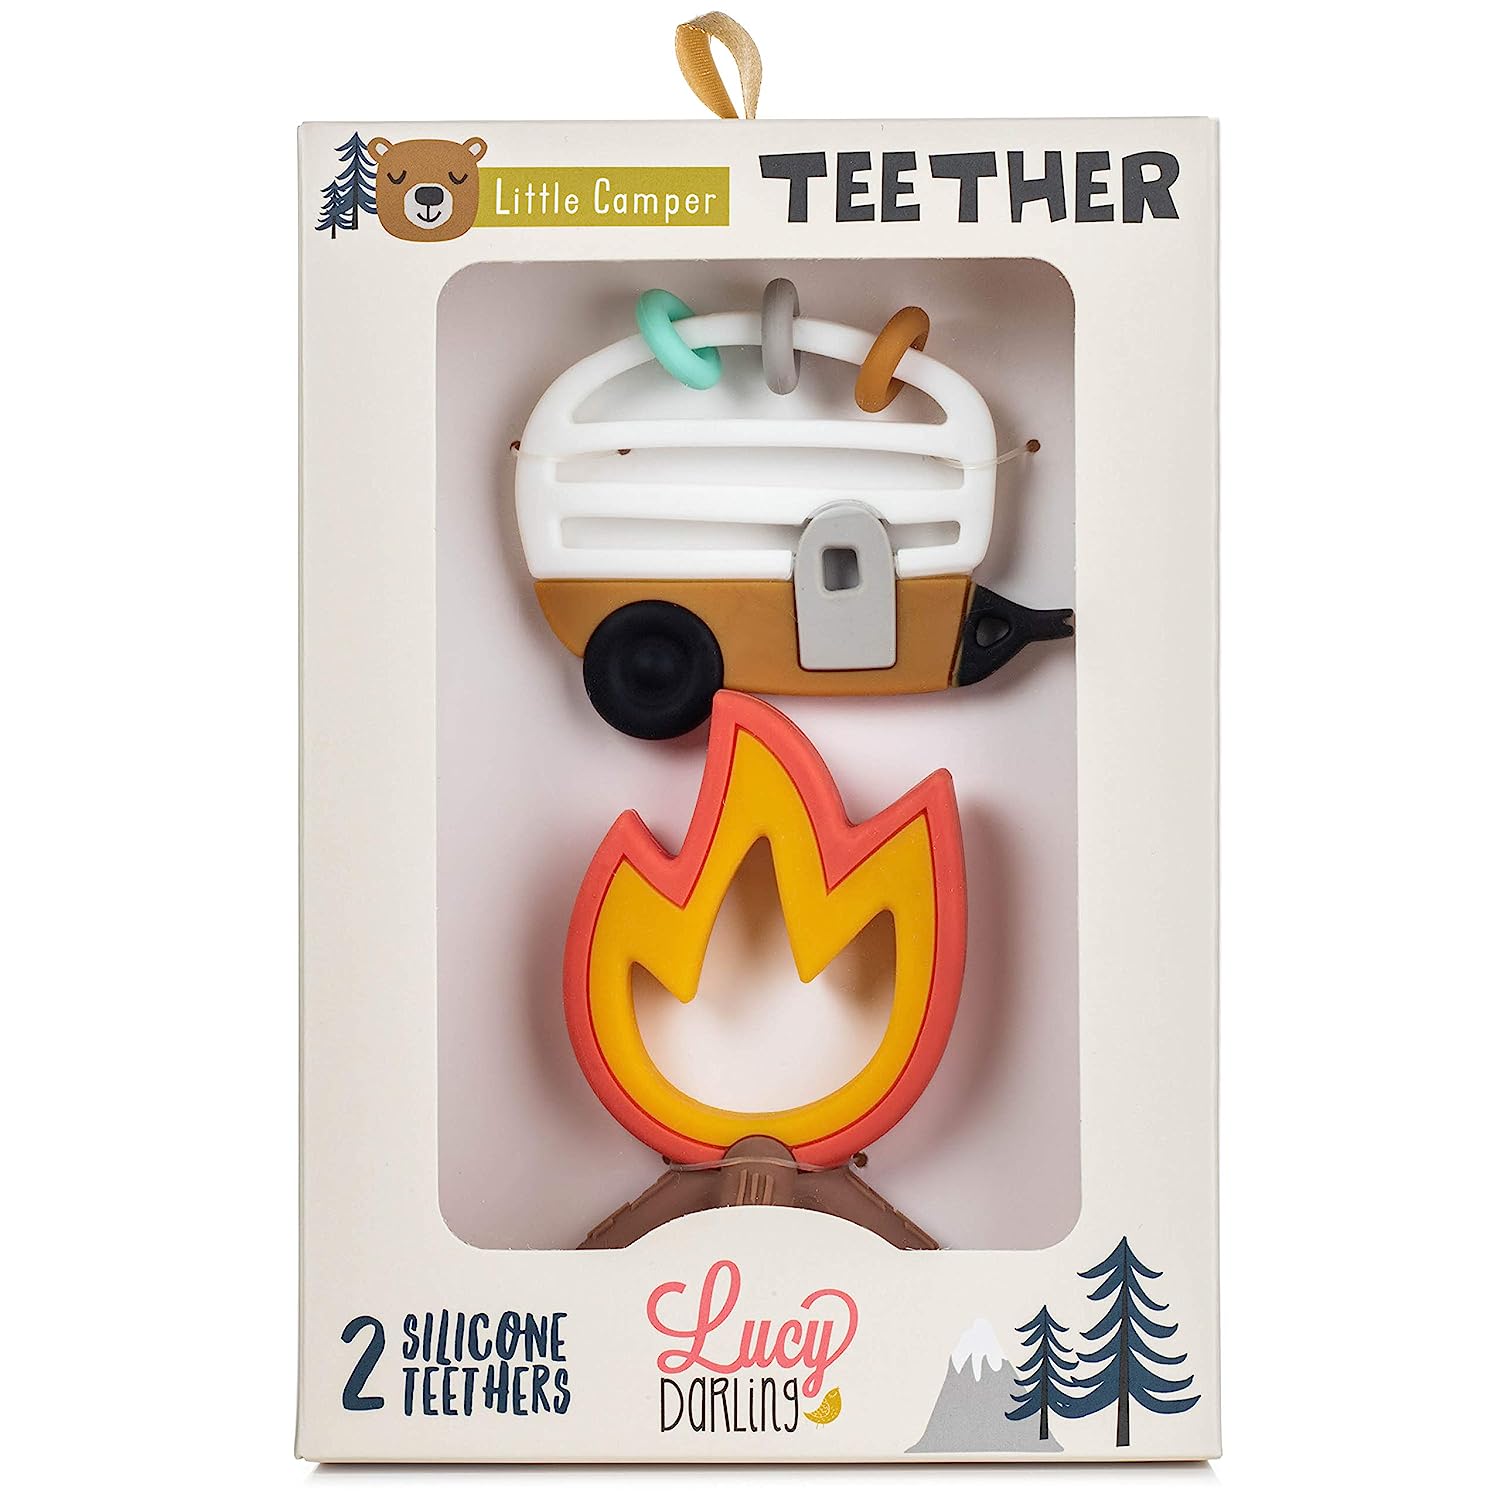 Little Camper Baby Teether Toy - Twinkle Twinkle Little One